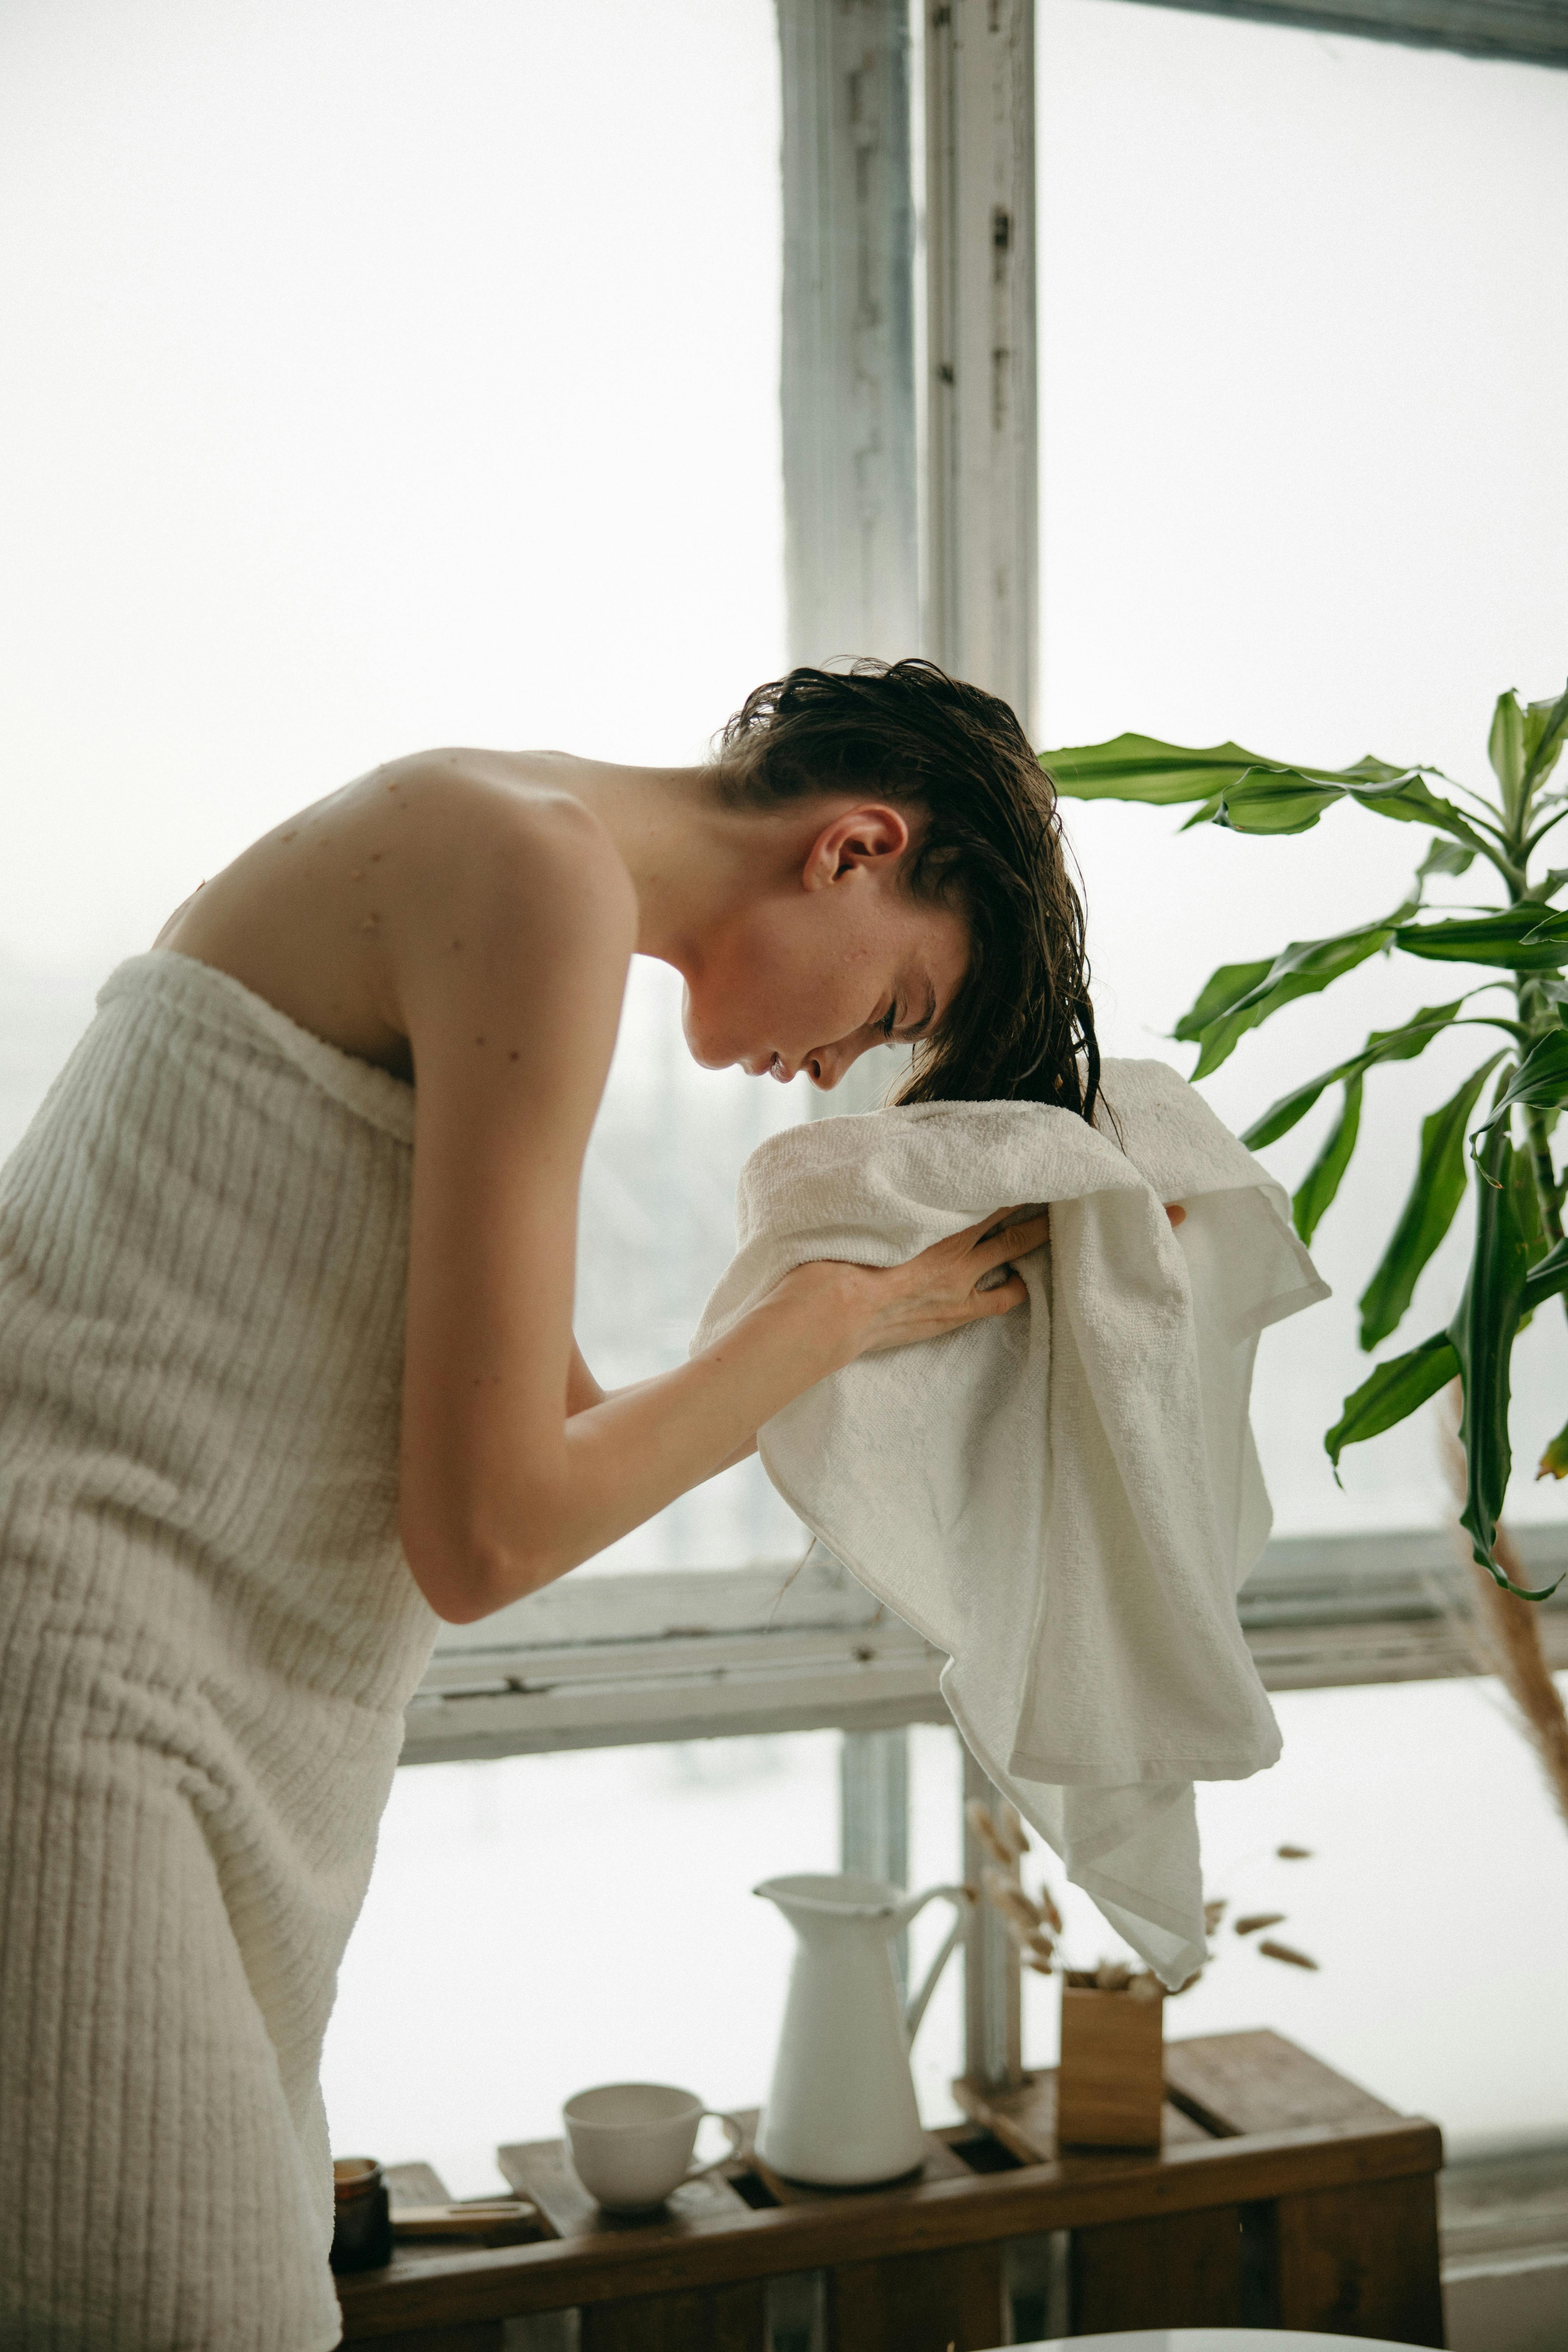 Une femme se séchant les cheveux avec une serviette après la douche | Source : Pexels